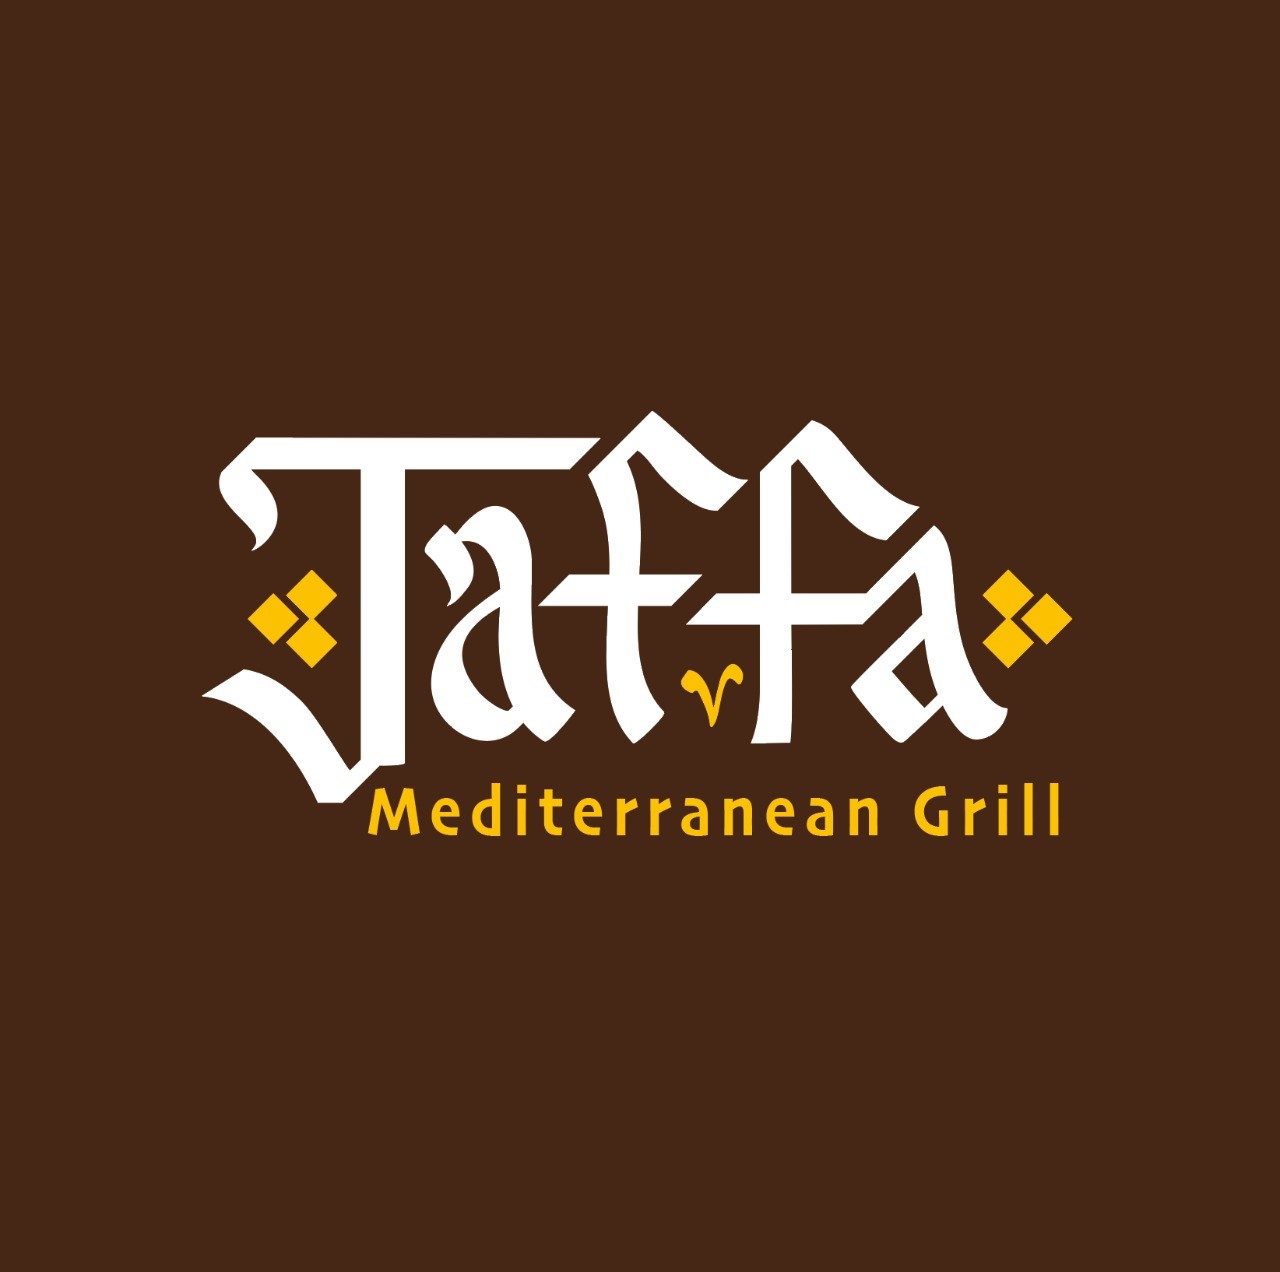 Jaffa Mediterranean Grill Logo